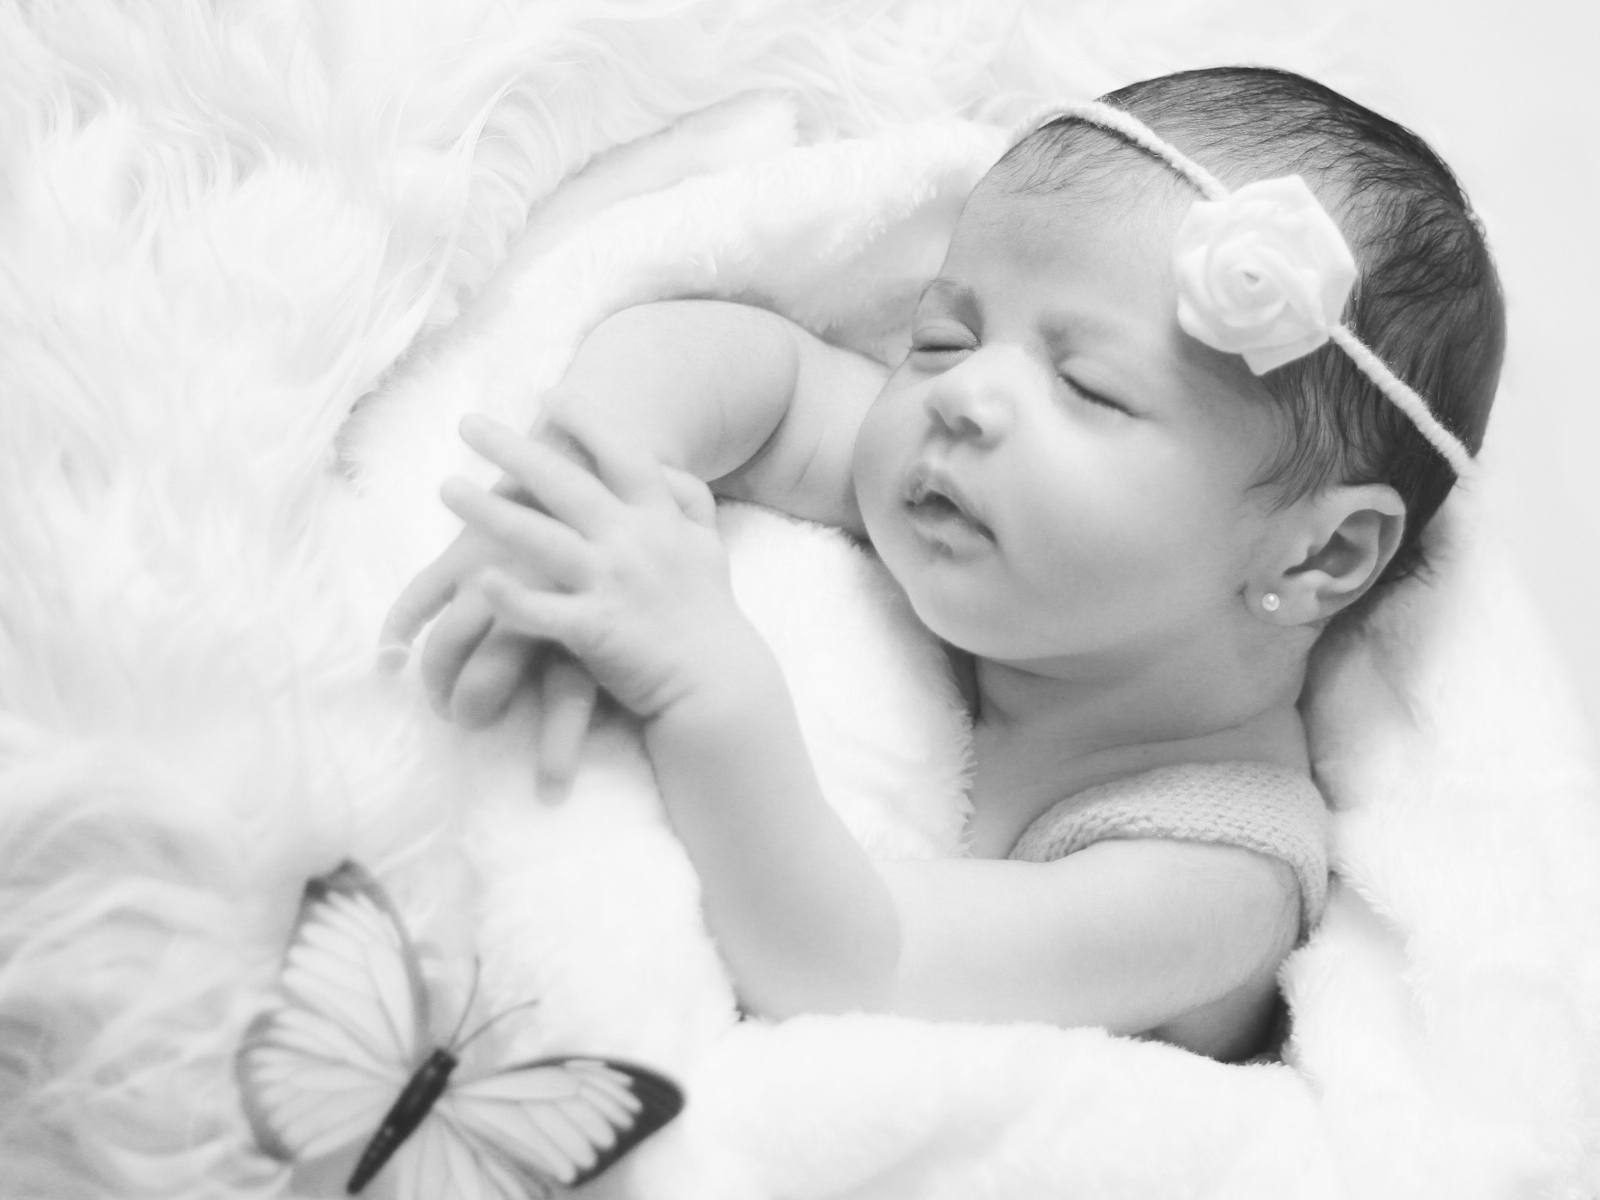 Красивое черно-белое фото новорожденной девочки